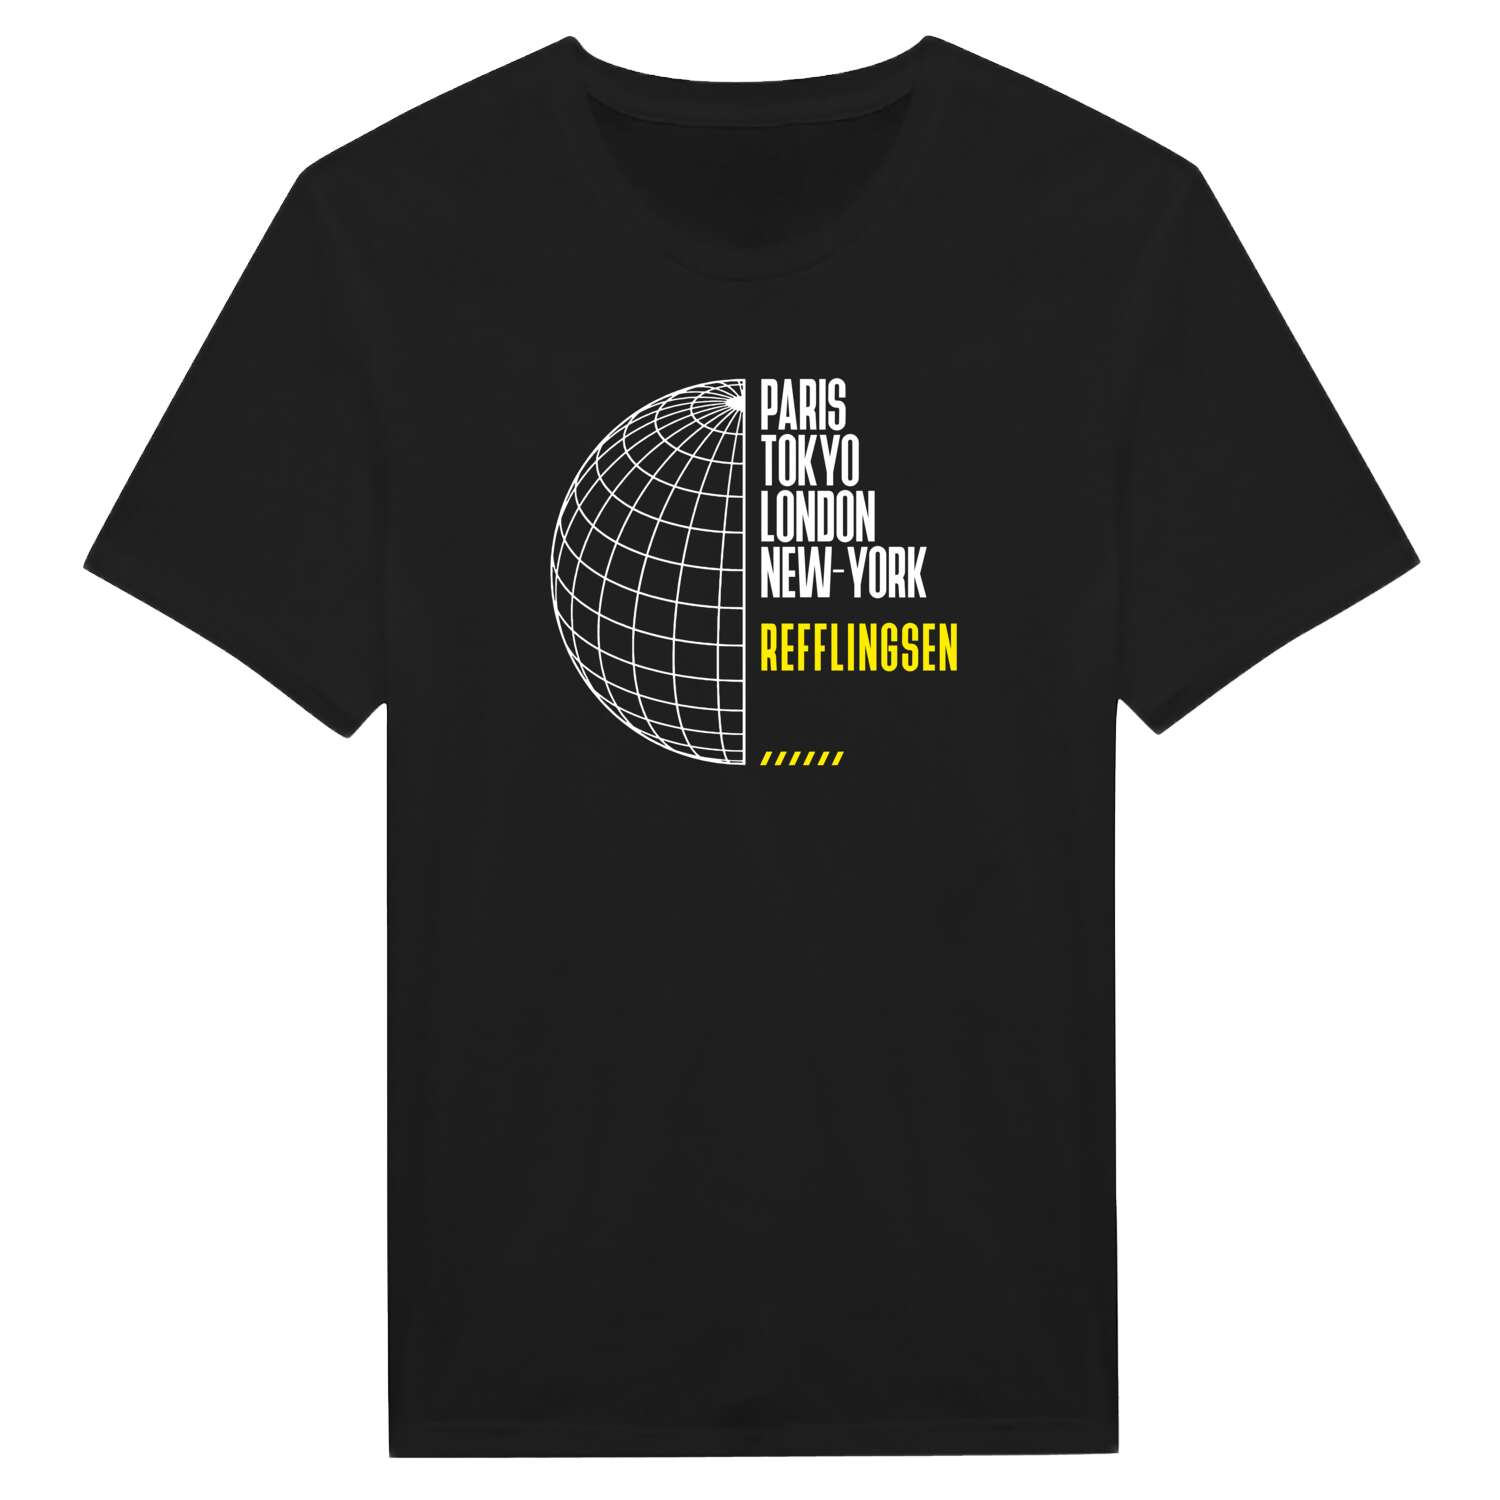 Refflingsen T-Shirt »Paris Tokyo London«